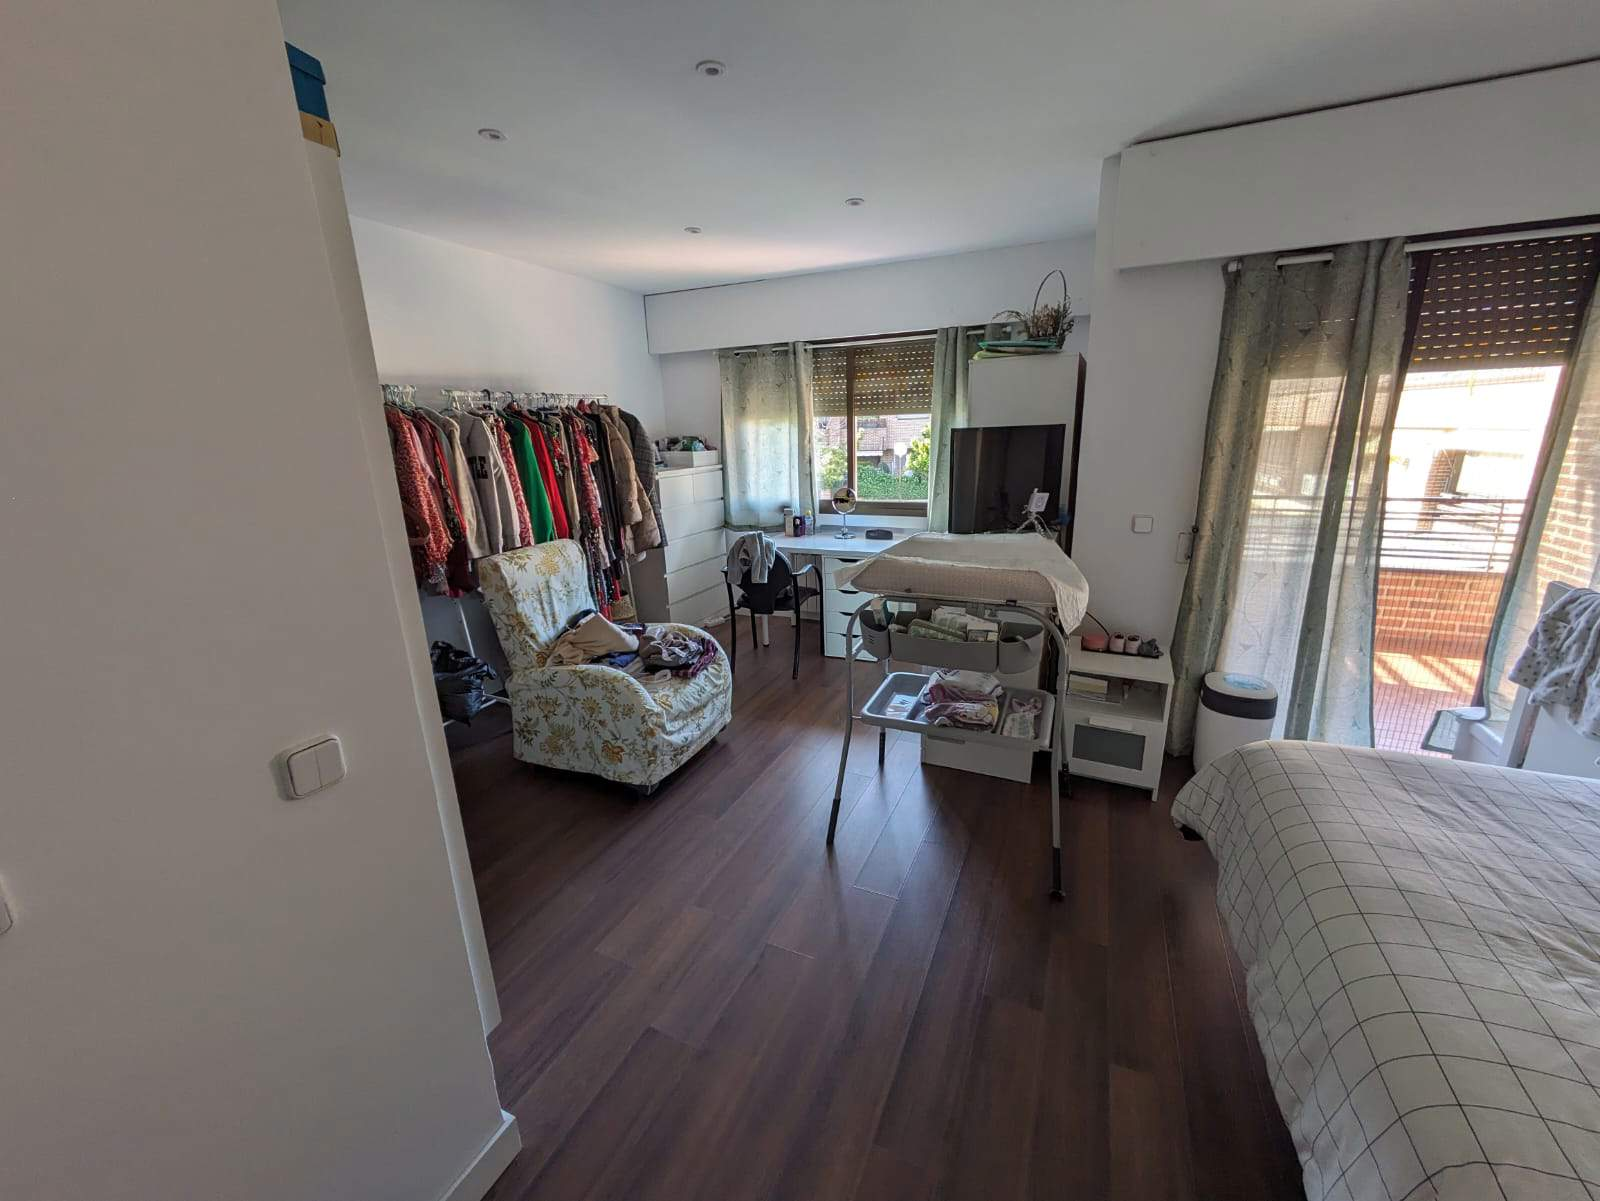 Dormitorio y vestidor de Silvia Baro, lectora de Las Rozas (Madrid)